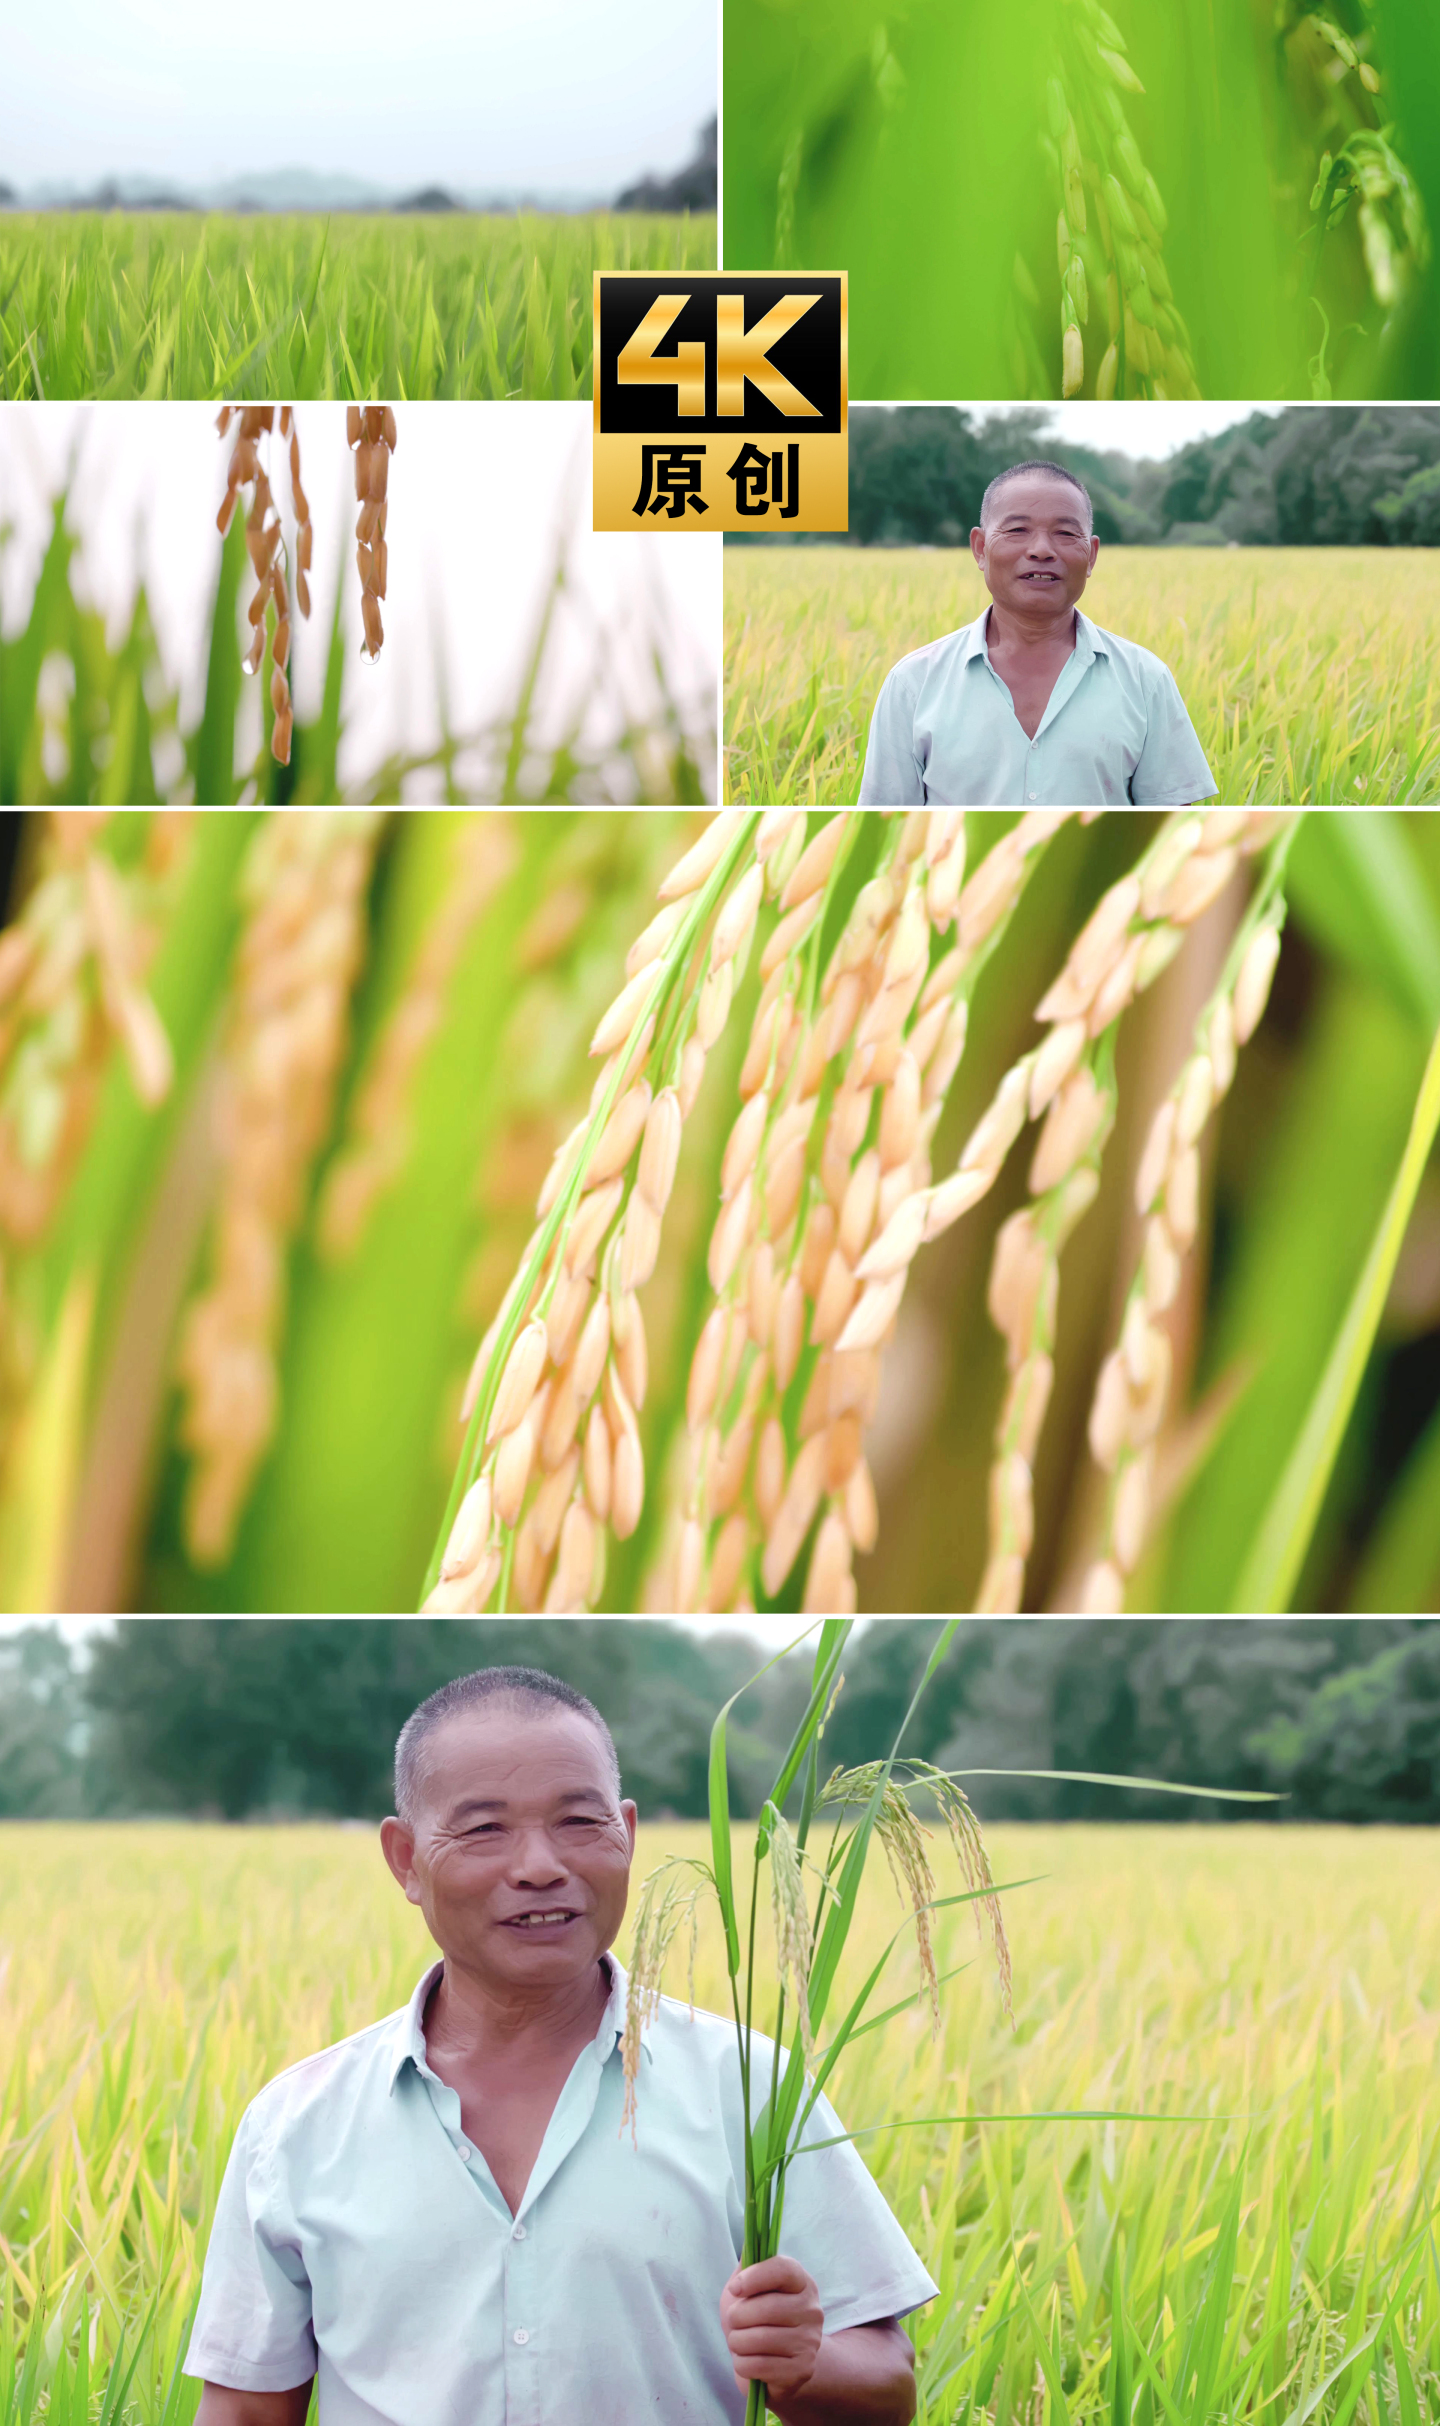 【4K】农民丰收笑容金黄稻田水稻